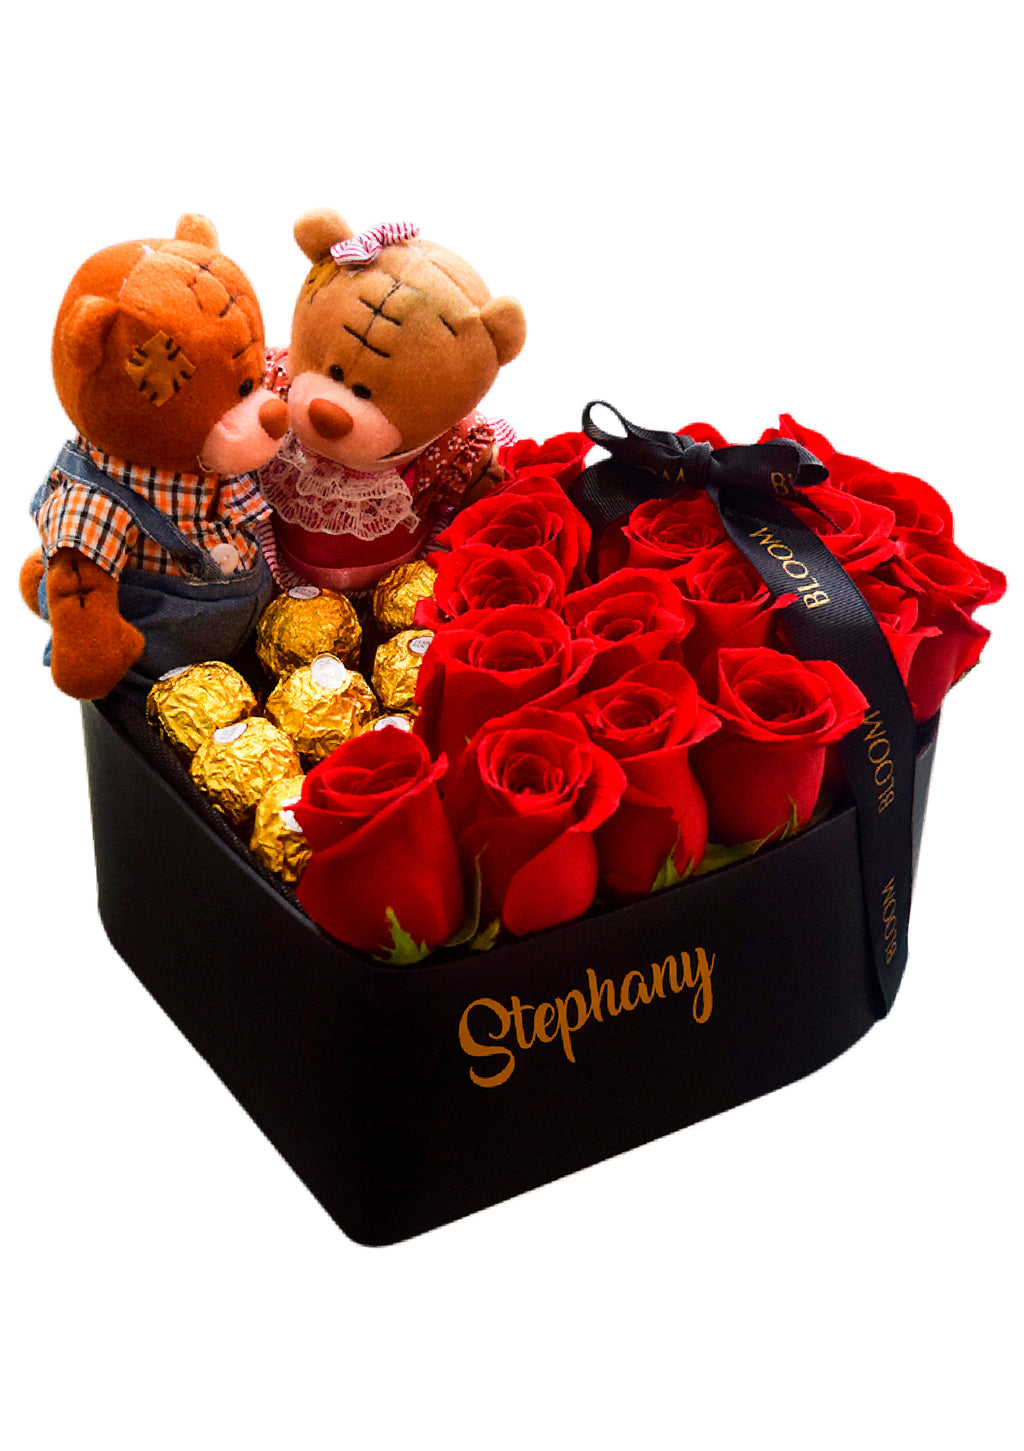 Box Regalo San Valentín Caja Corazón con Peluche y Chocolates